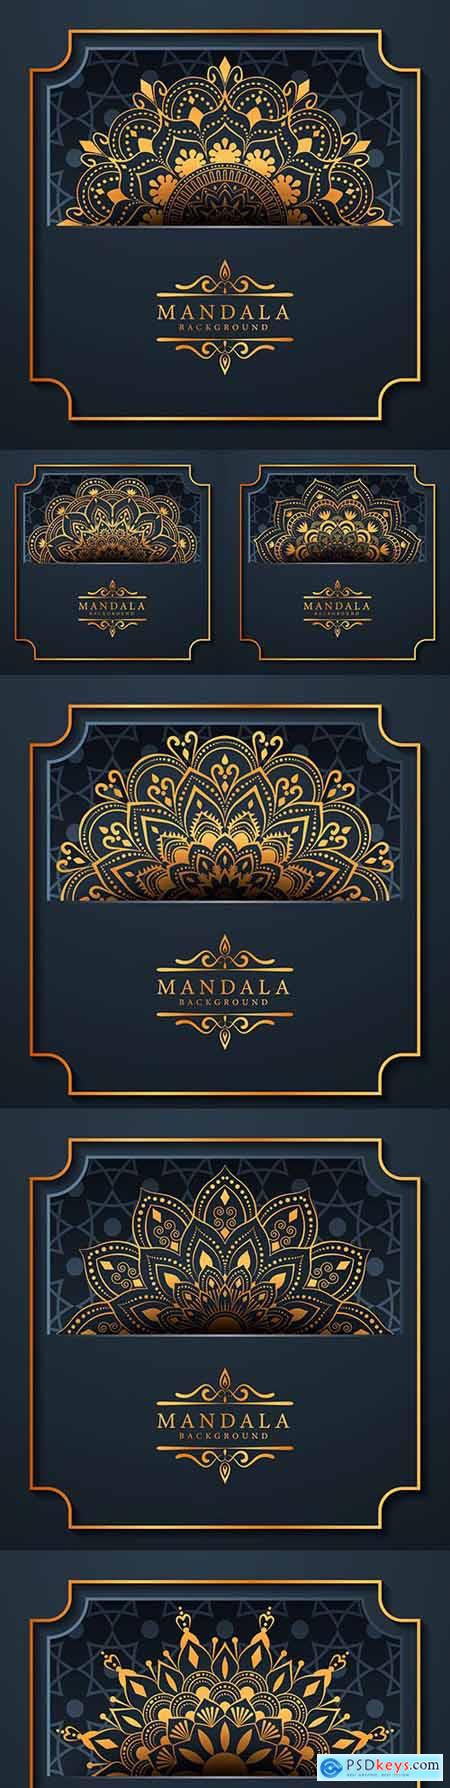 Mandala creative luxury blue design background 3